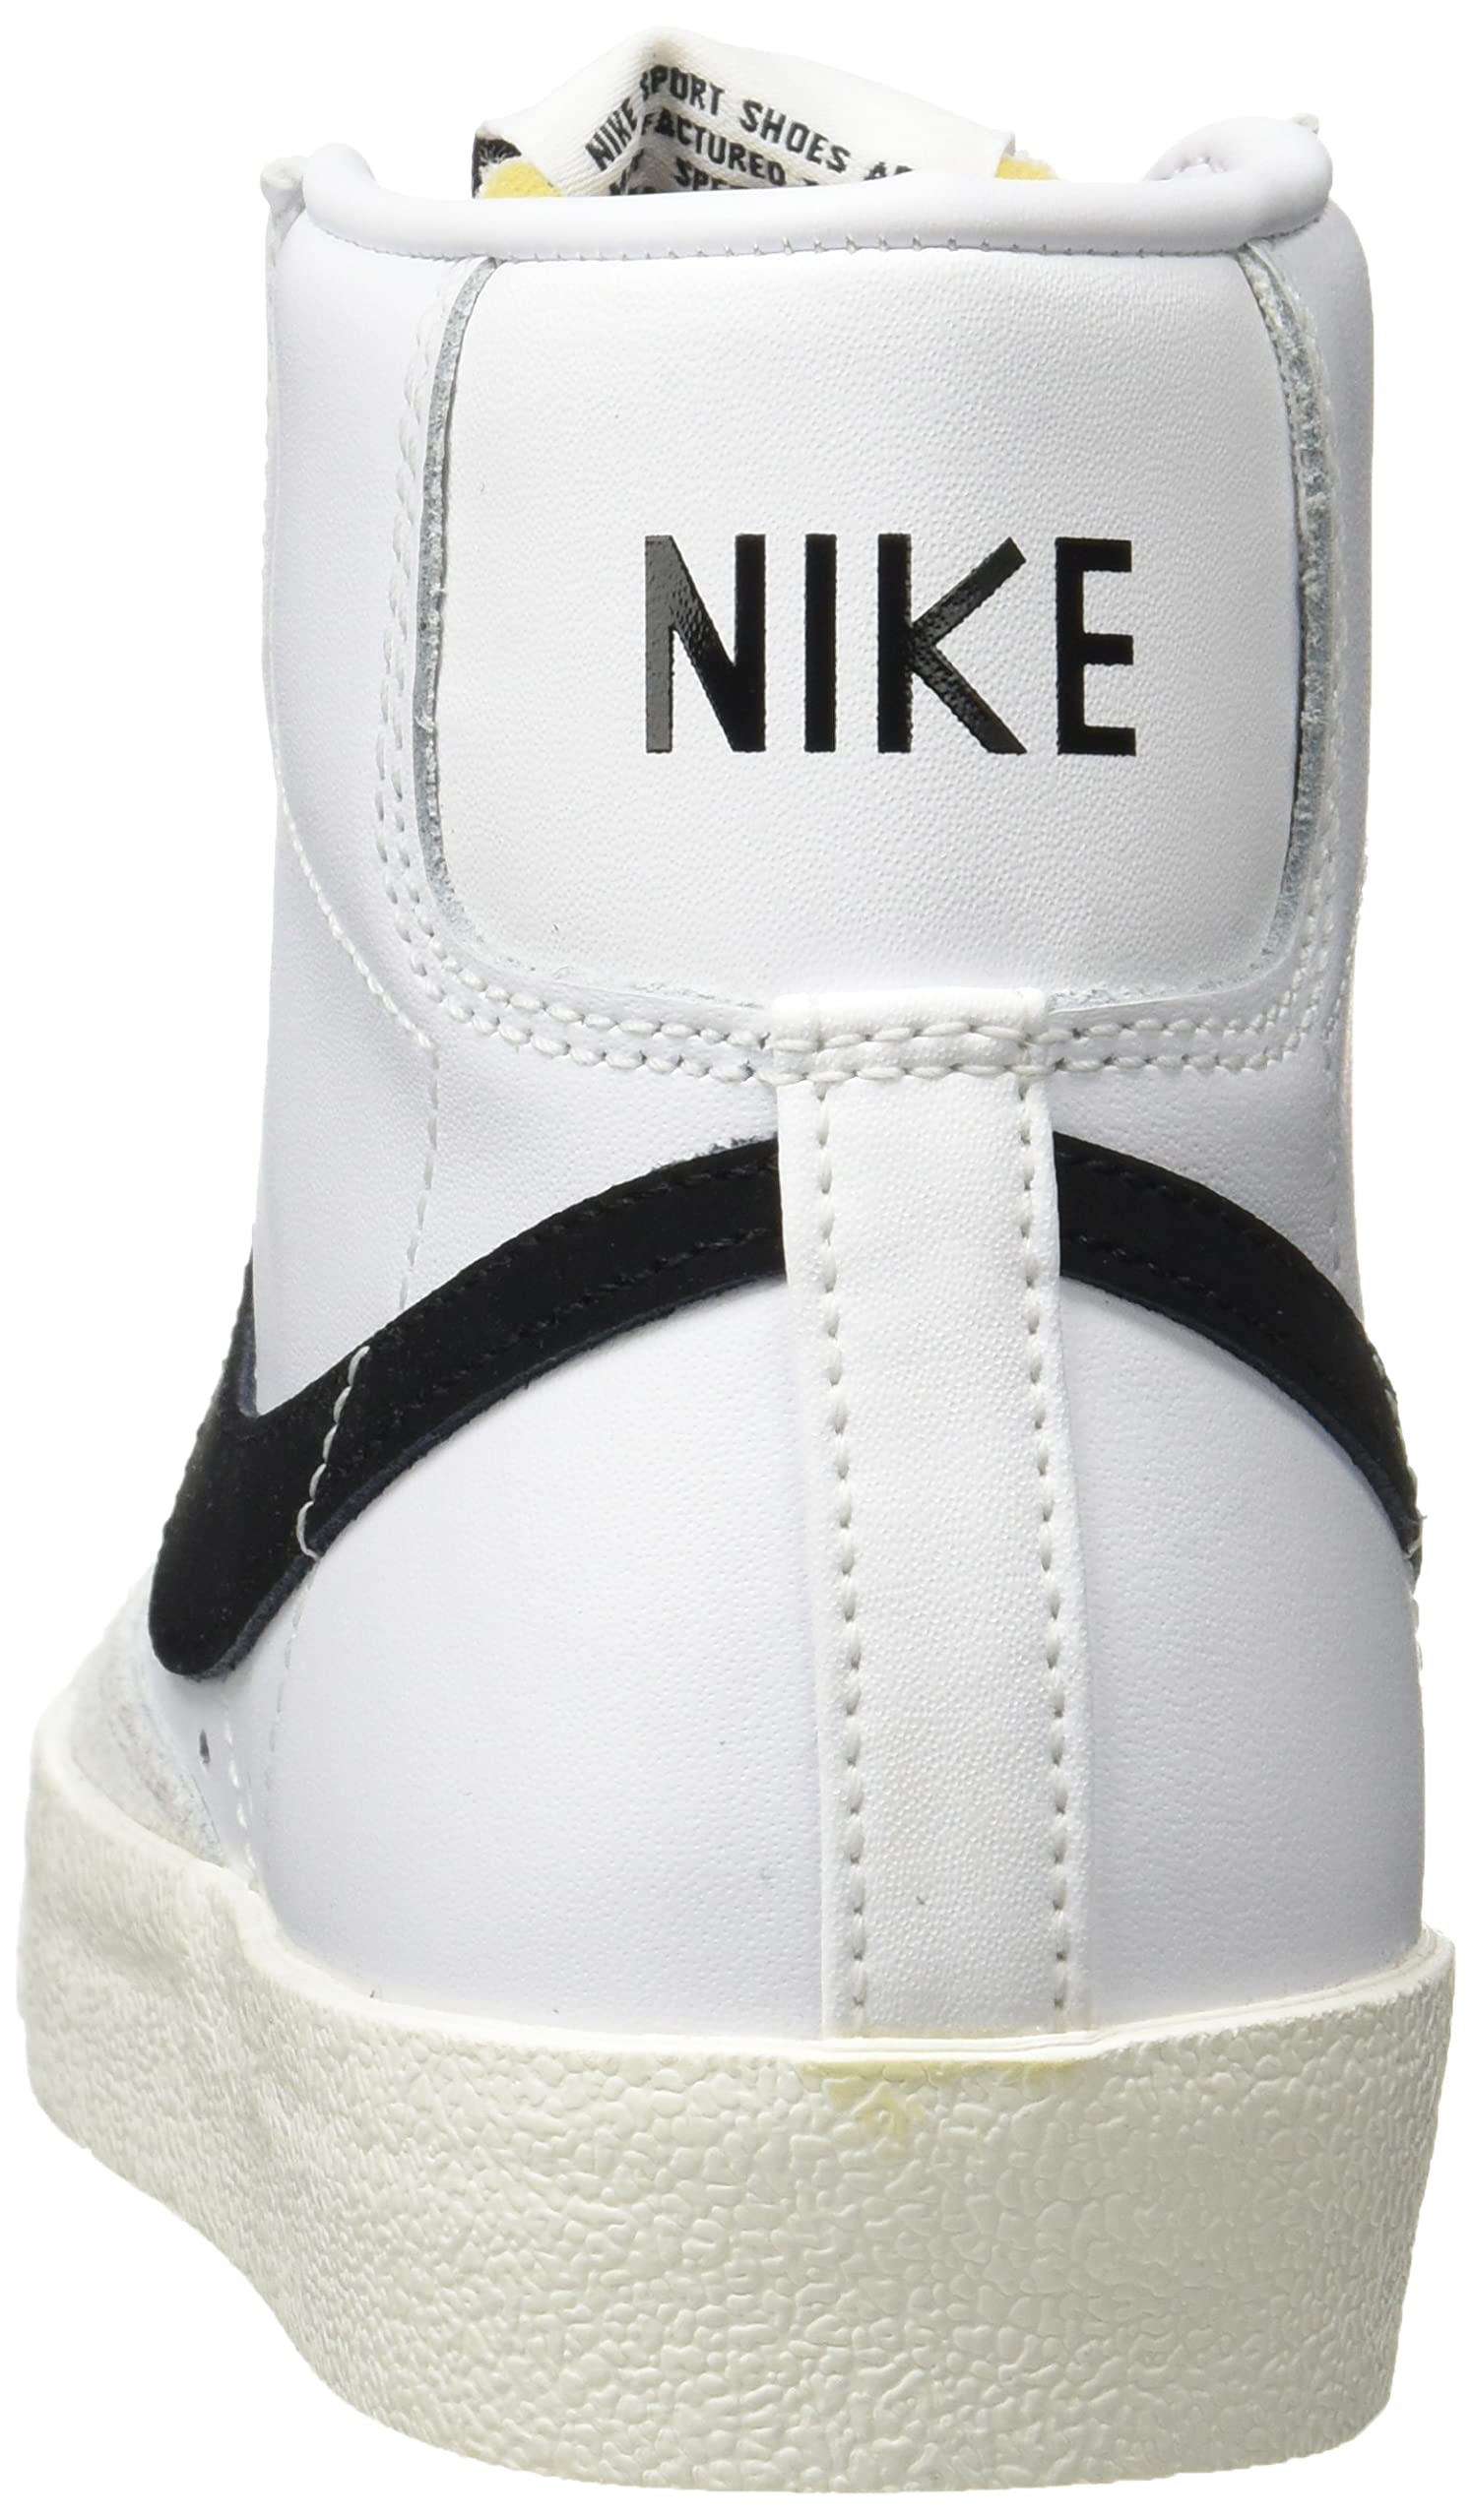 Nike Women's Basketball Shoe